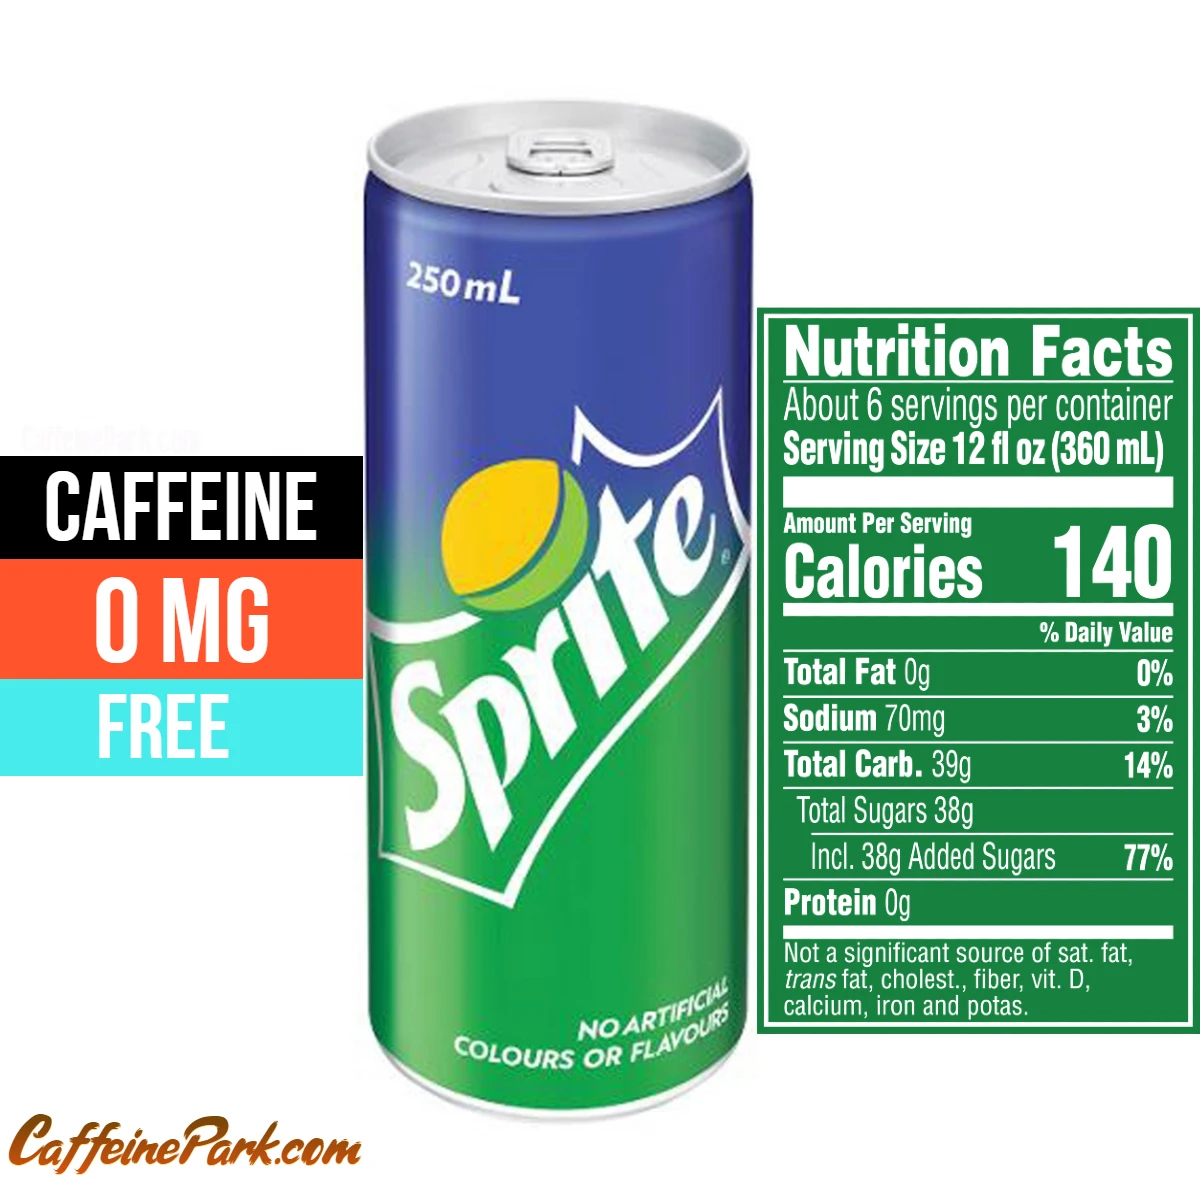 Does Sprite Have Caffeine?